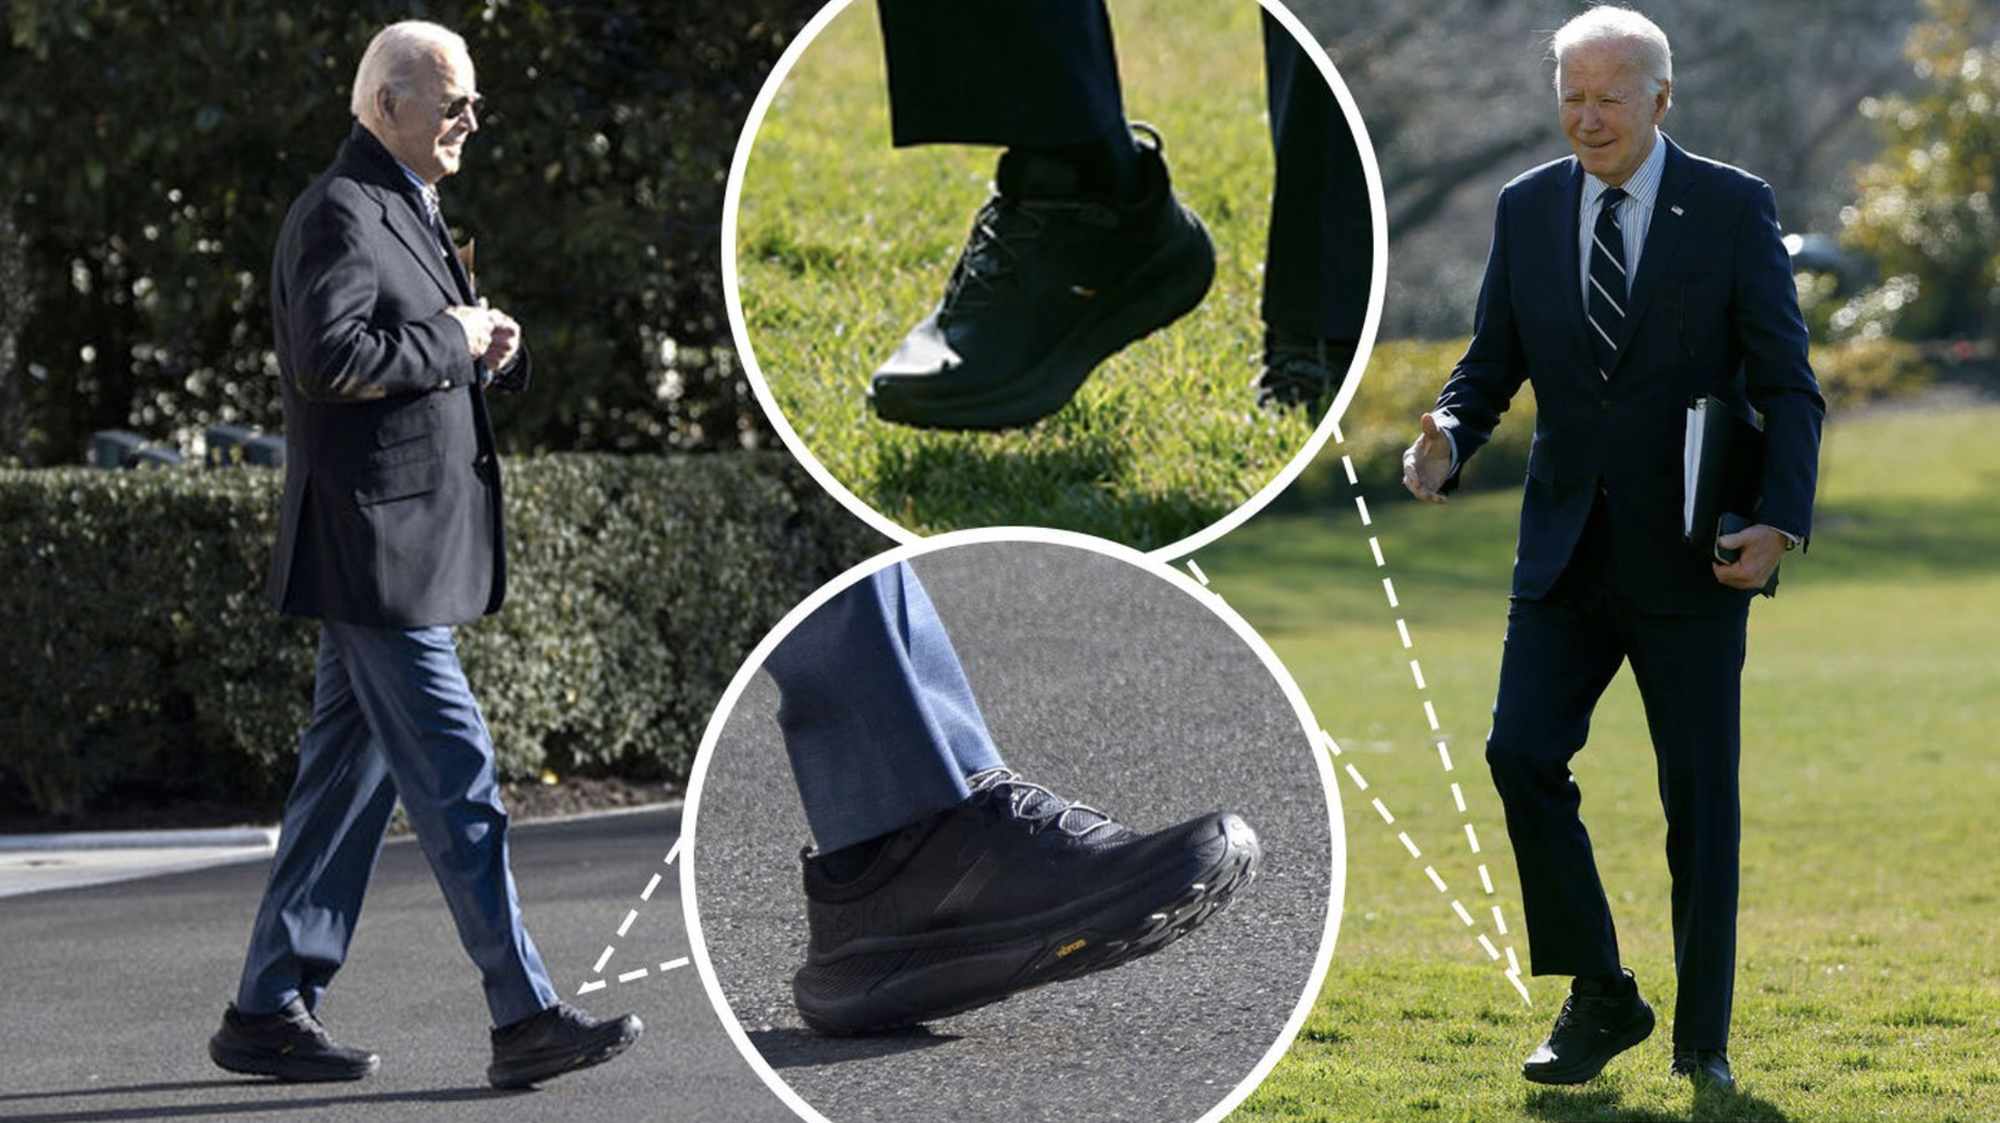 Đôi giày chống ngã của Tổng thống Biden gây chú ý- Ảnh 1.